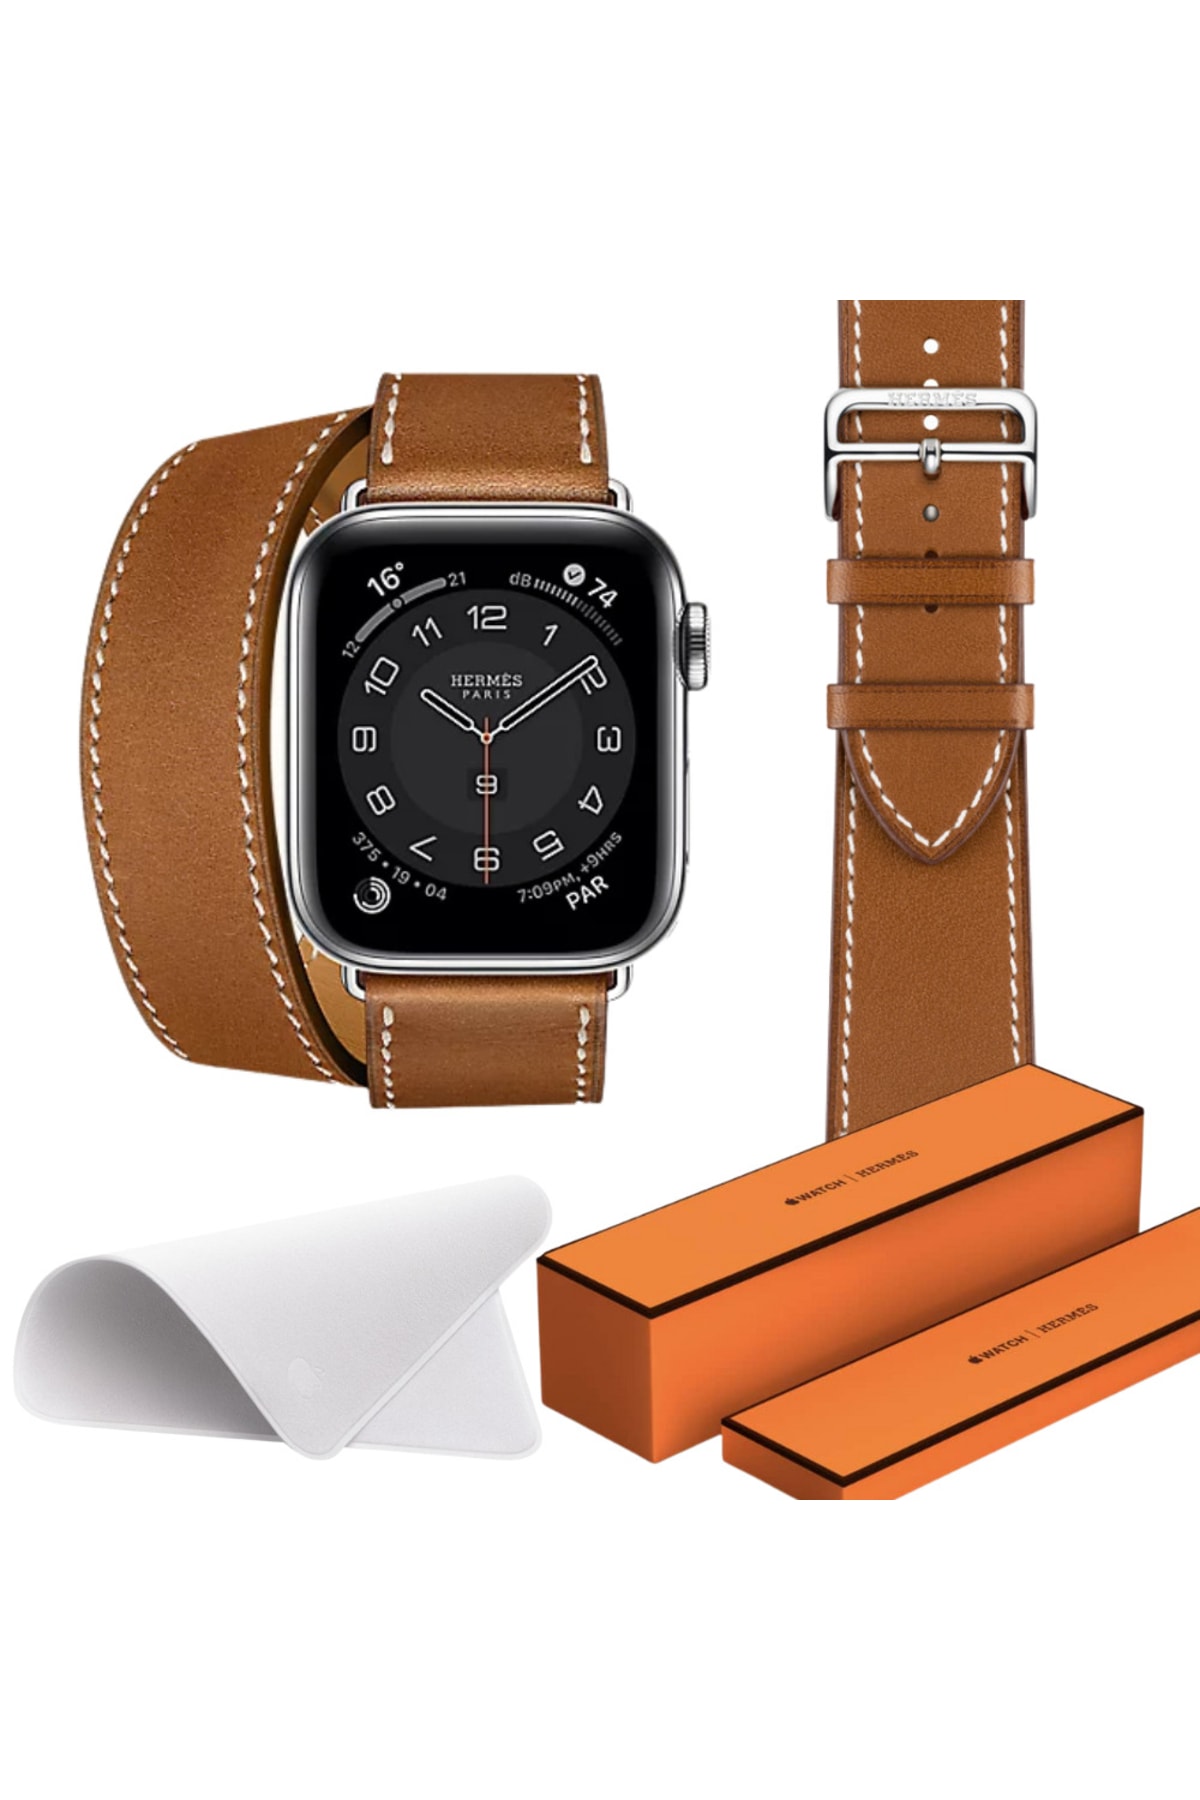 SFA15 Watch Hermes 44mm Akıllı Saat Kahverengi Çift Kordon Temizleme Bezi Hediyeli Set